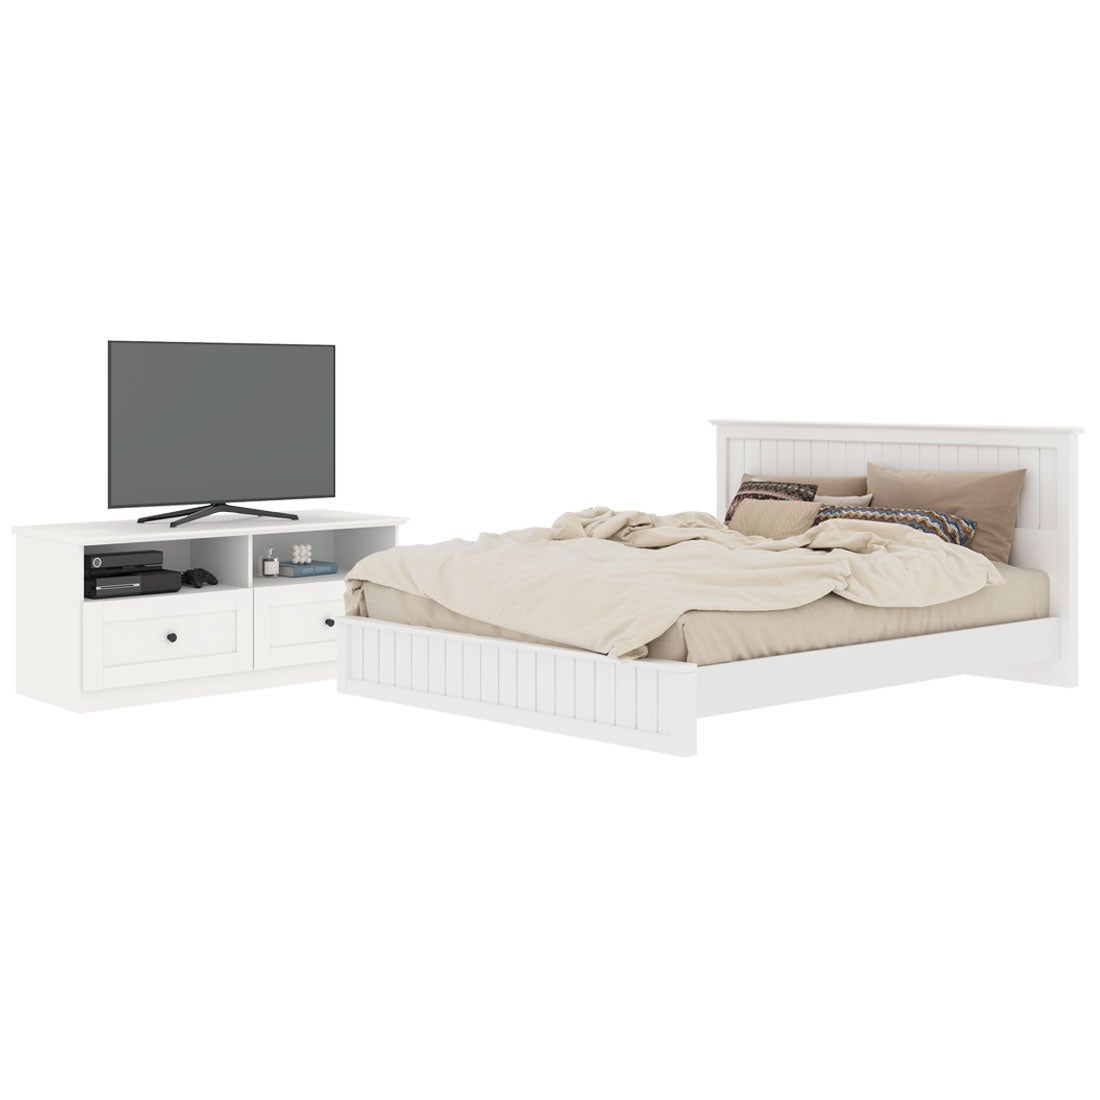 เตียงนอน ขนาด 6 ฟุต รุ่น Moneta & ชั้นวางทีวี 120 ซม. สีขาว1